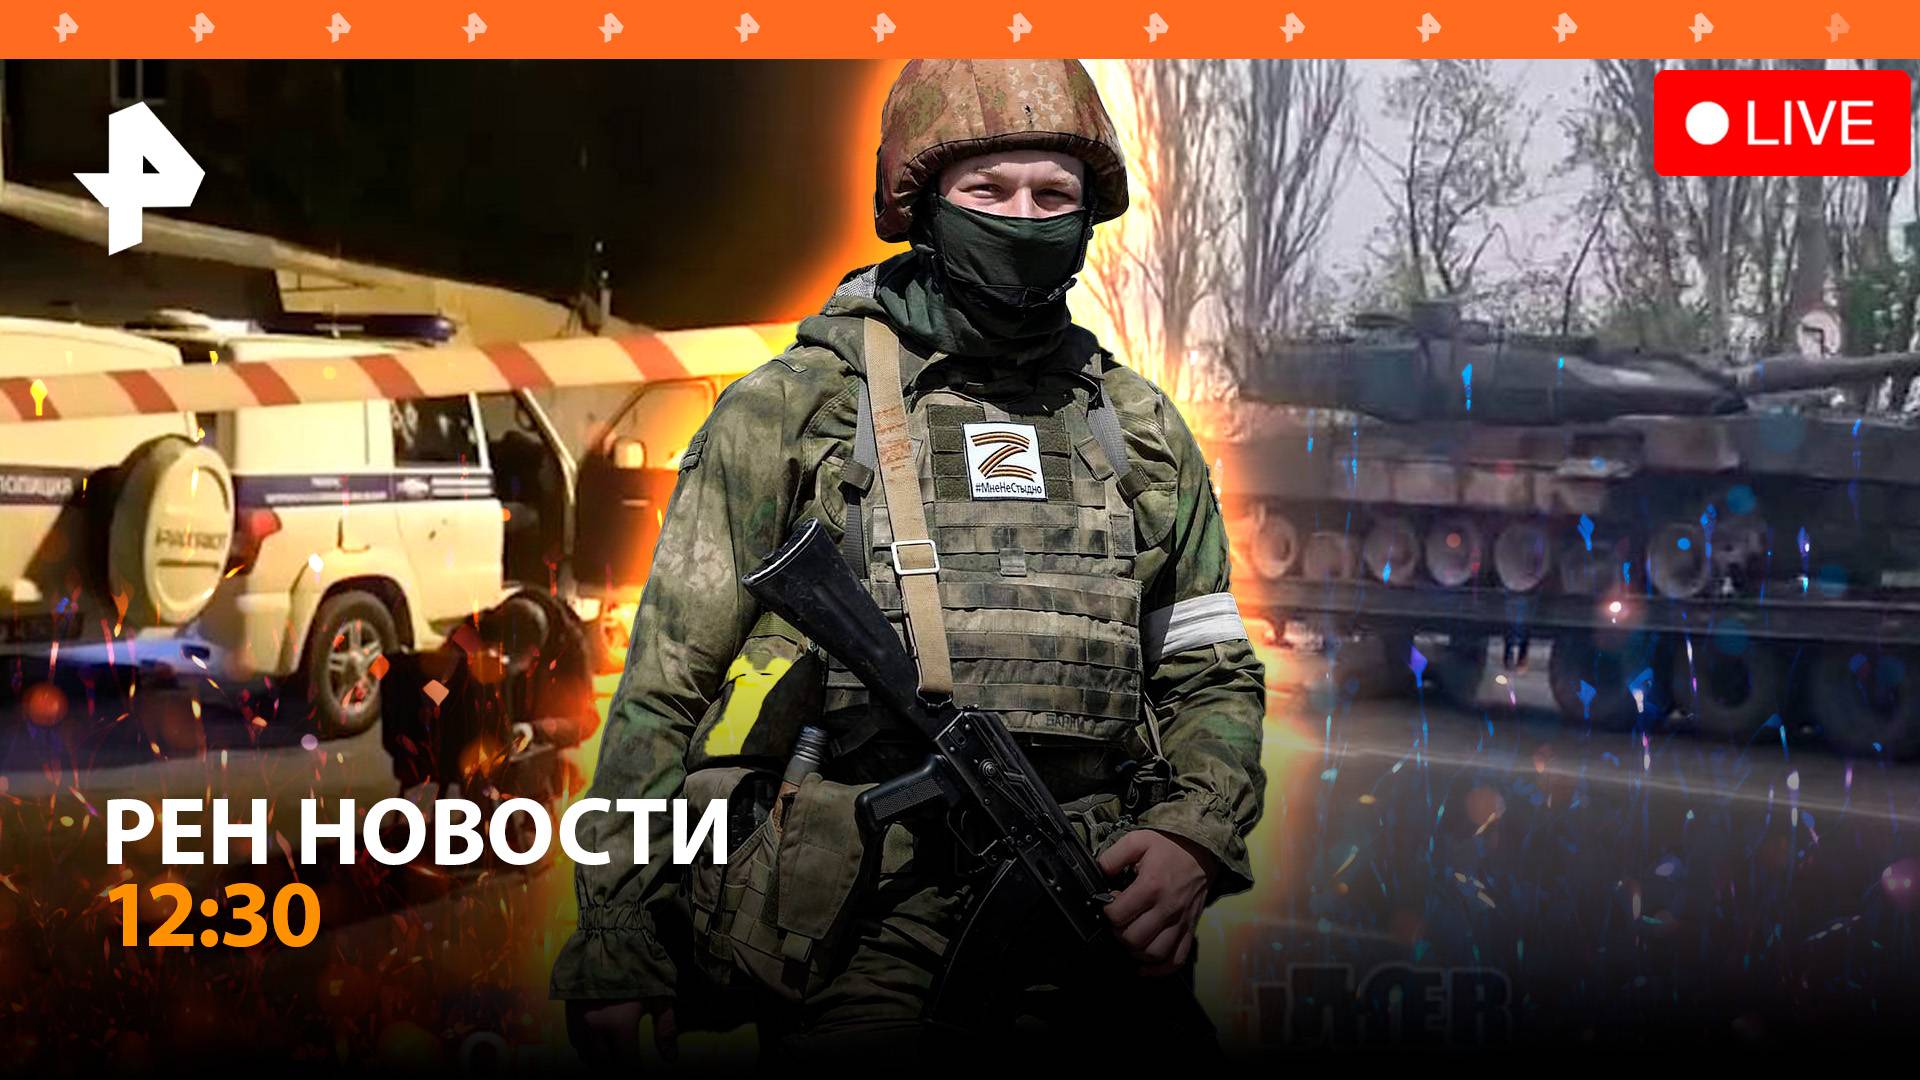 Нападение на полицейских в Карачаевске / Горит самая большая свалка в мире /РЕН Новости 22.04, 12:30